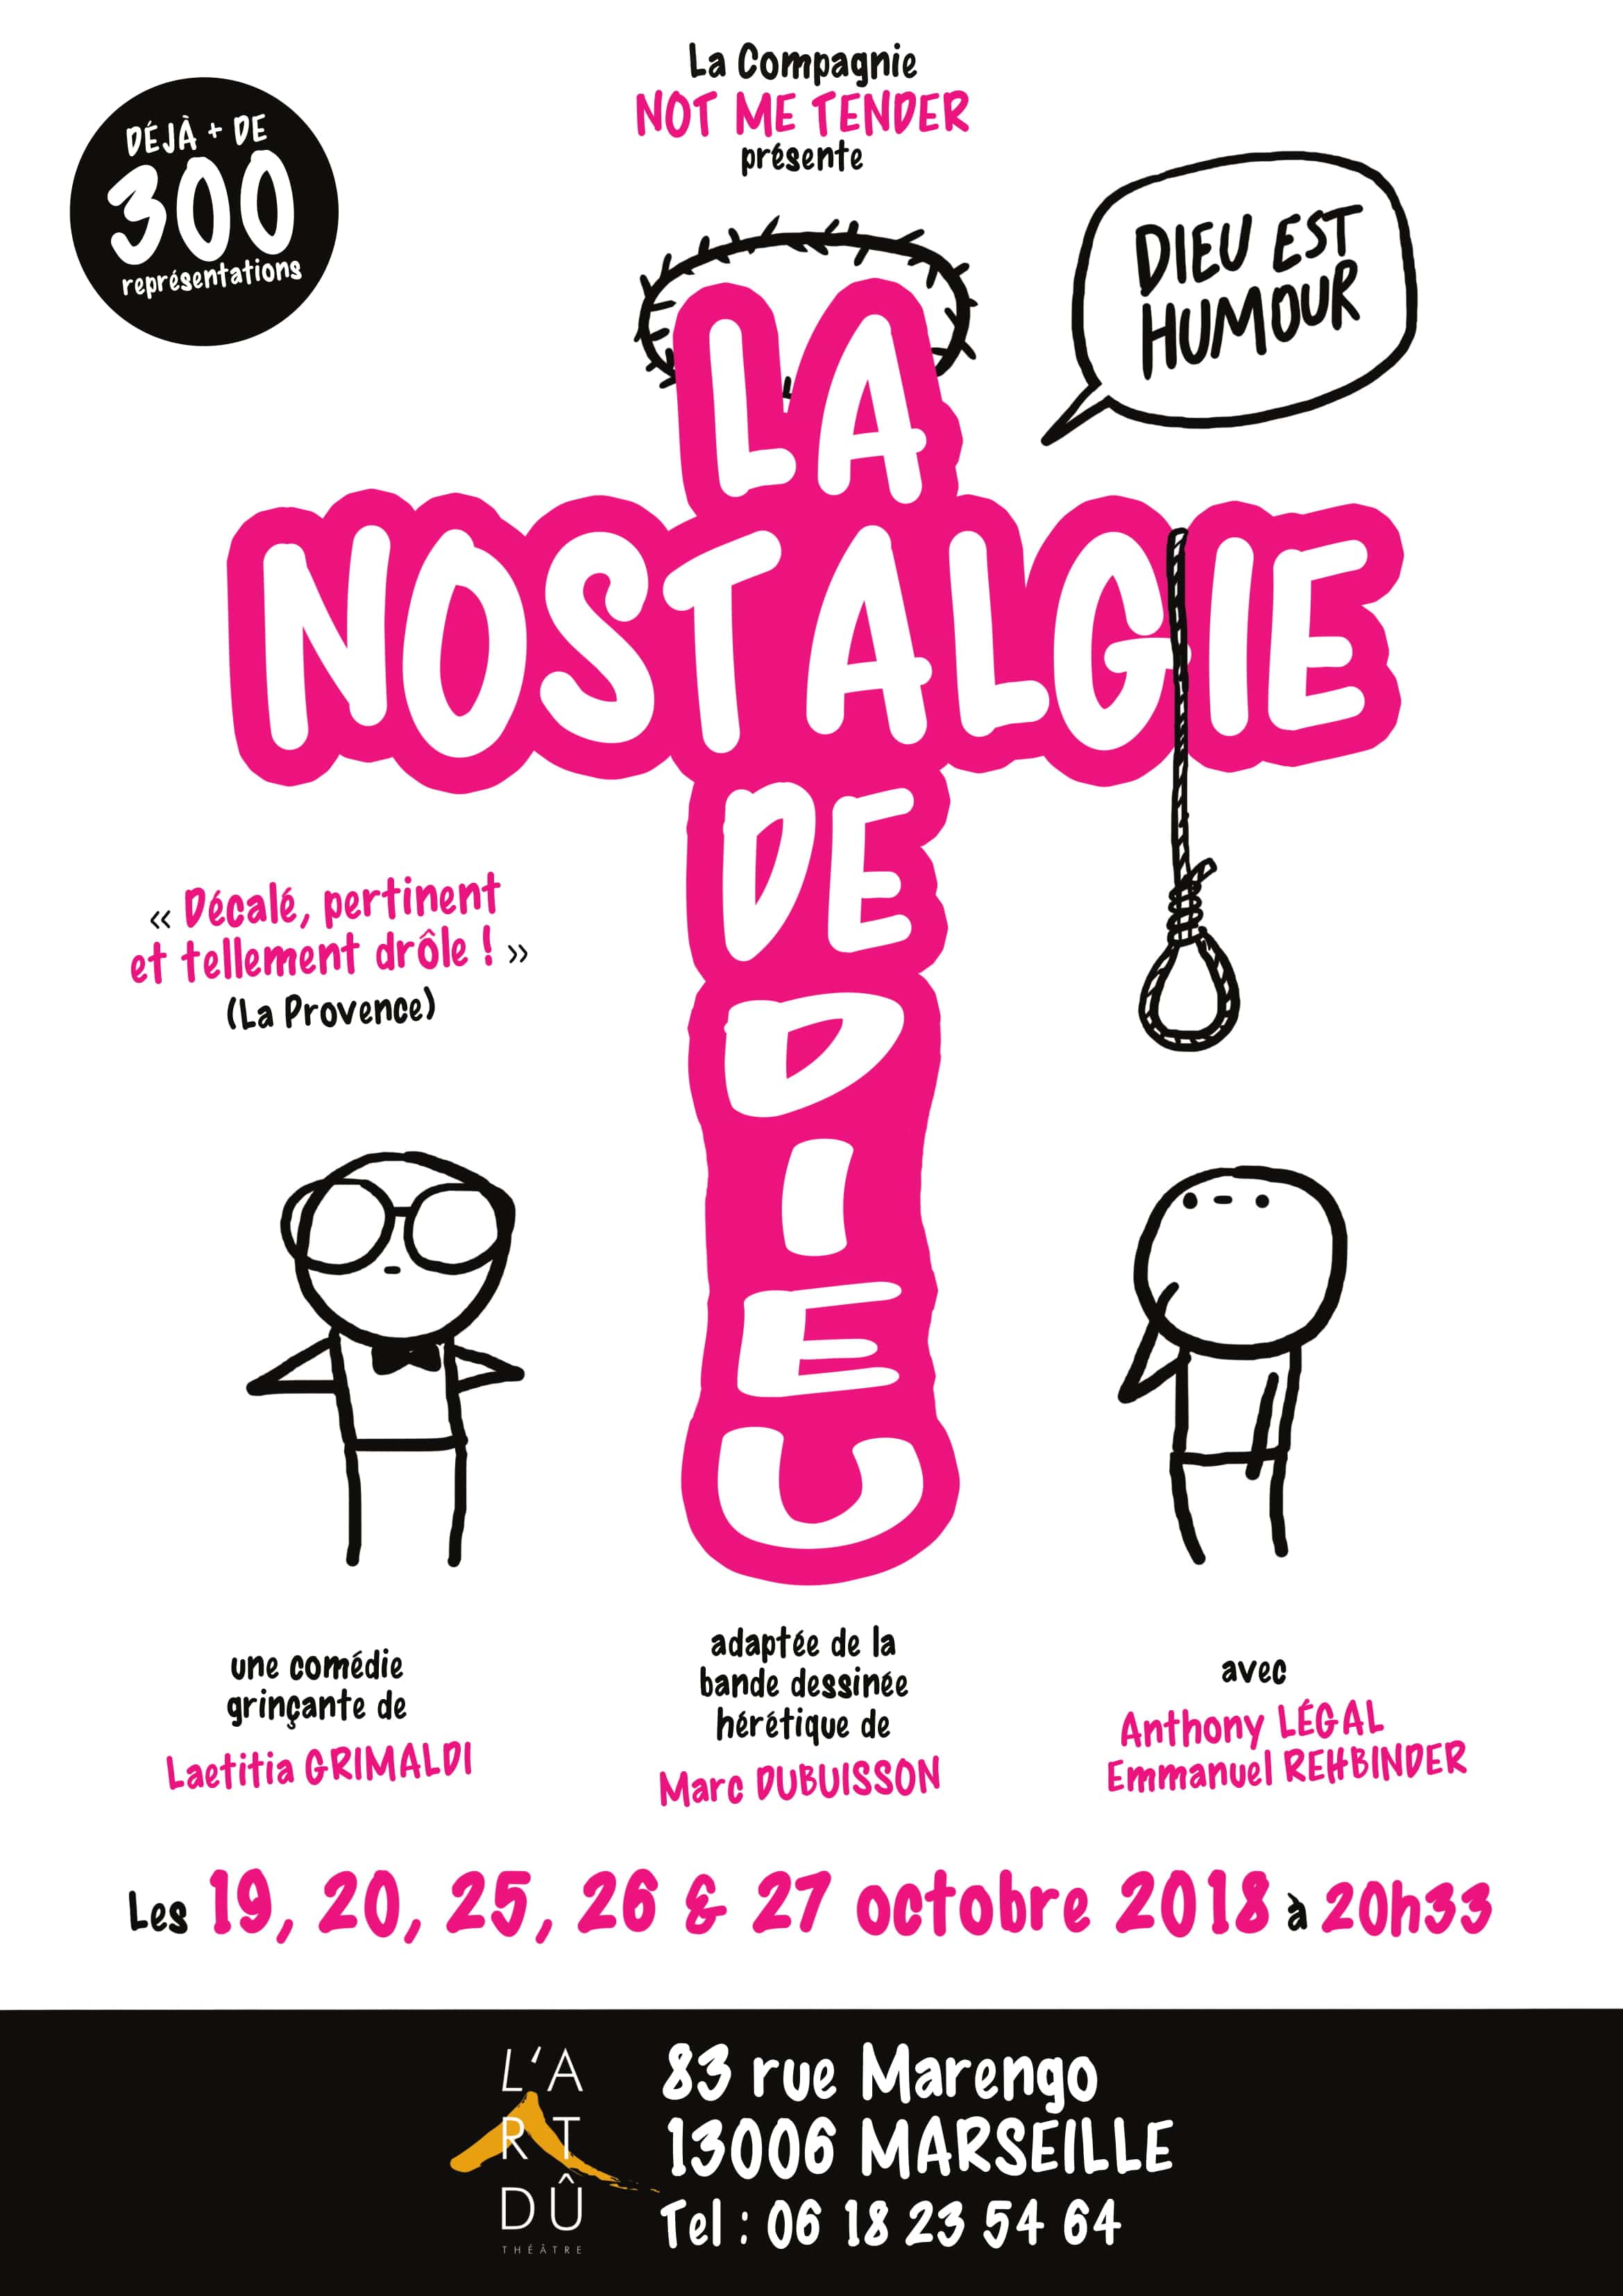 La nostalgie de dieu - Théâtre L'Art Dû - Marseille - 13006 - comédie - Humour